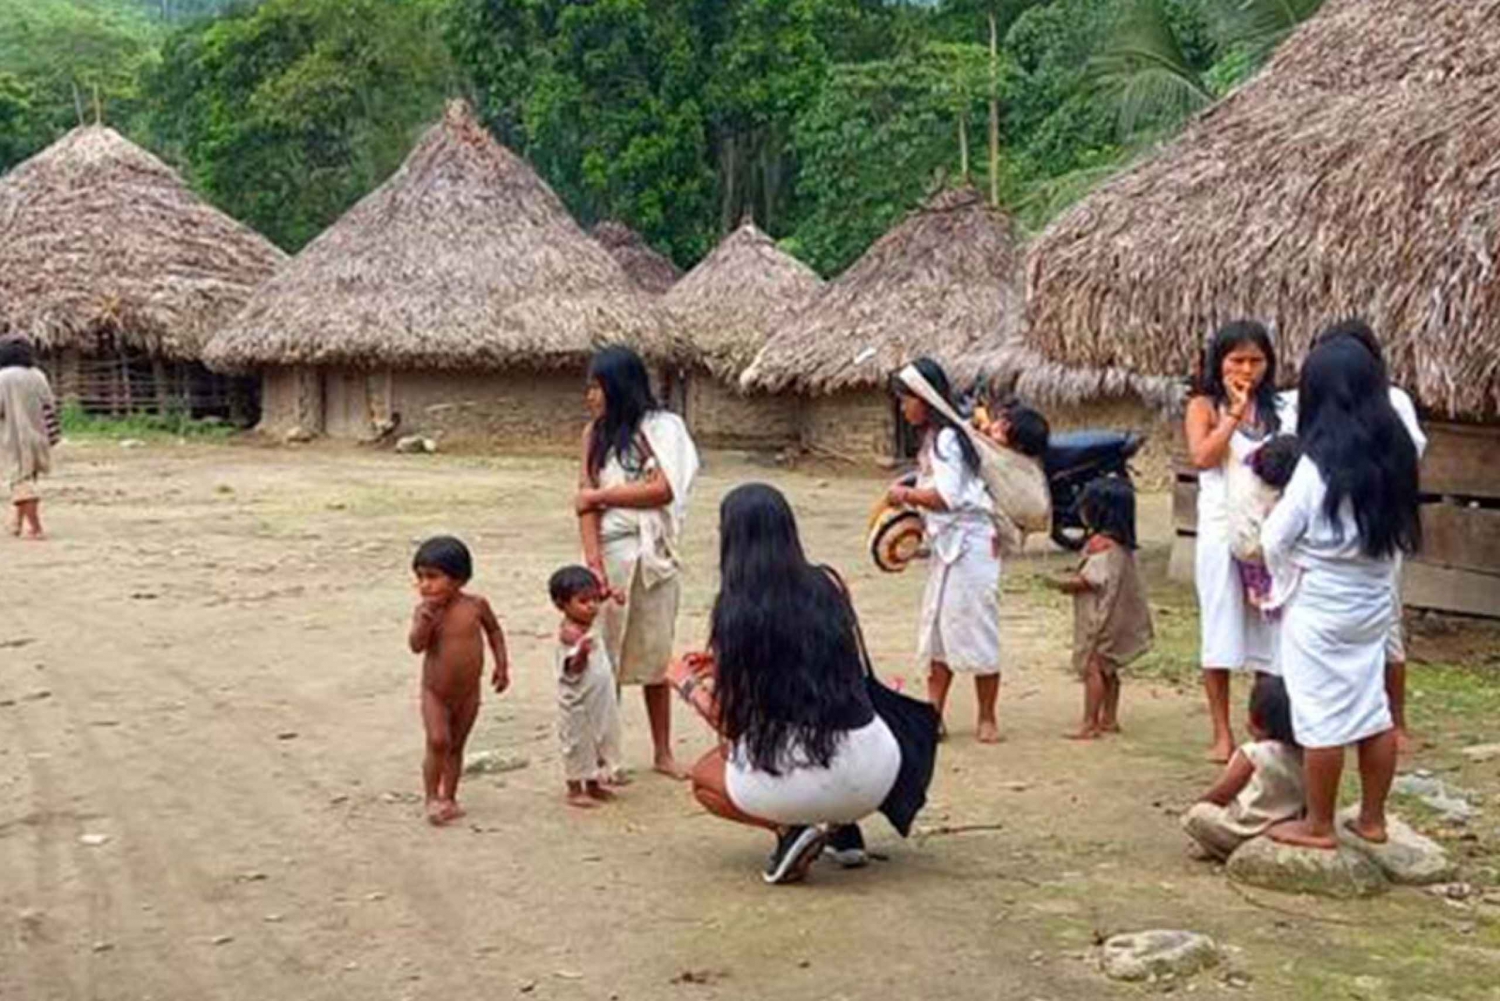 Palomino: Visita Privada a la Aldea Indígena Tungueka